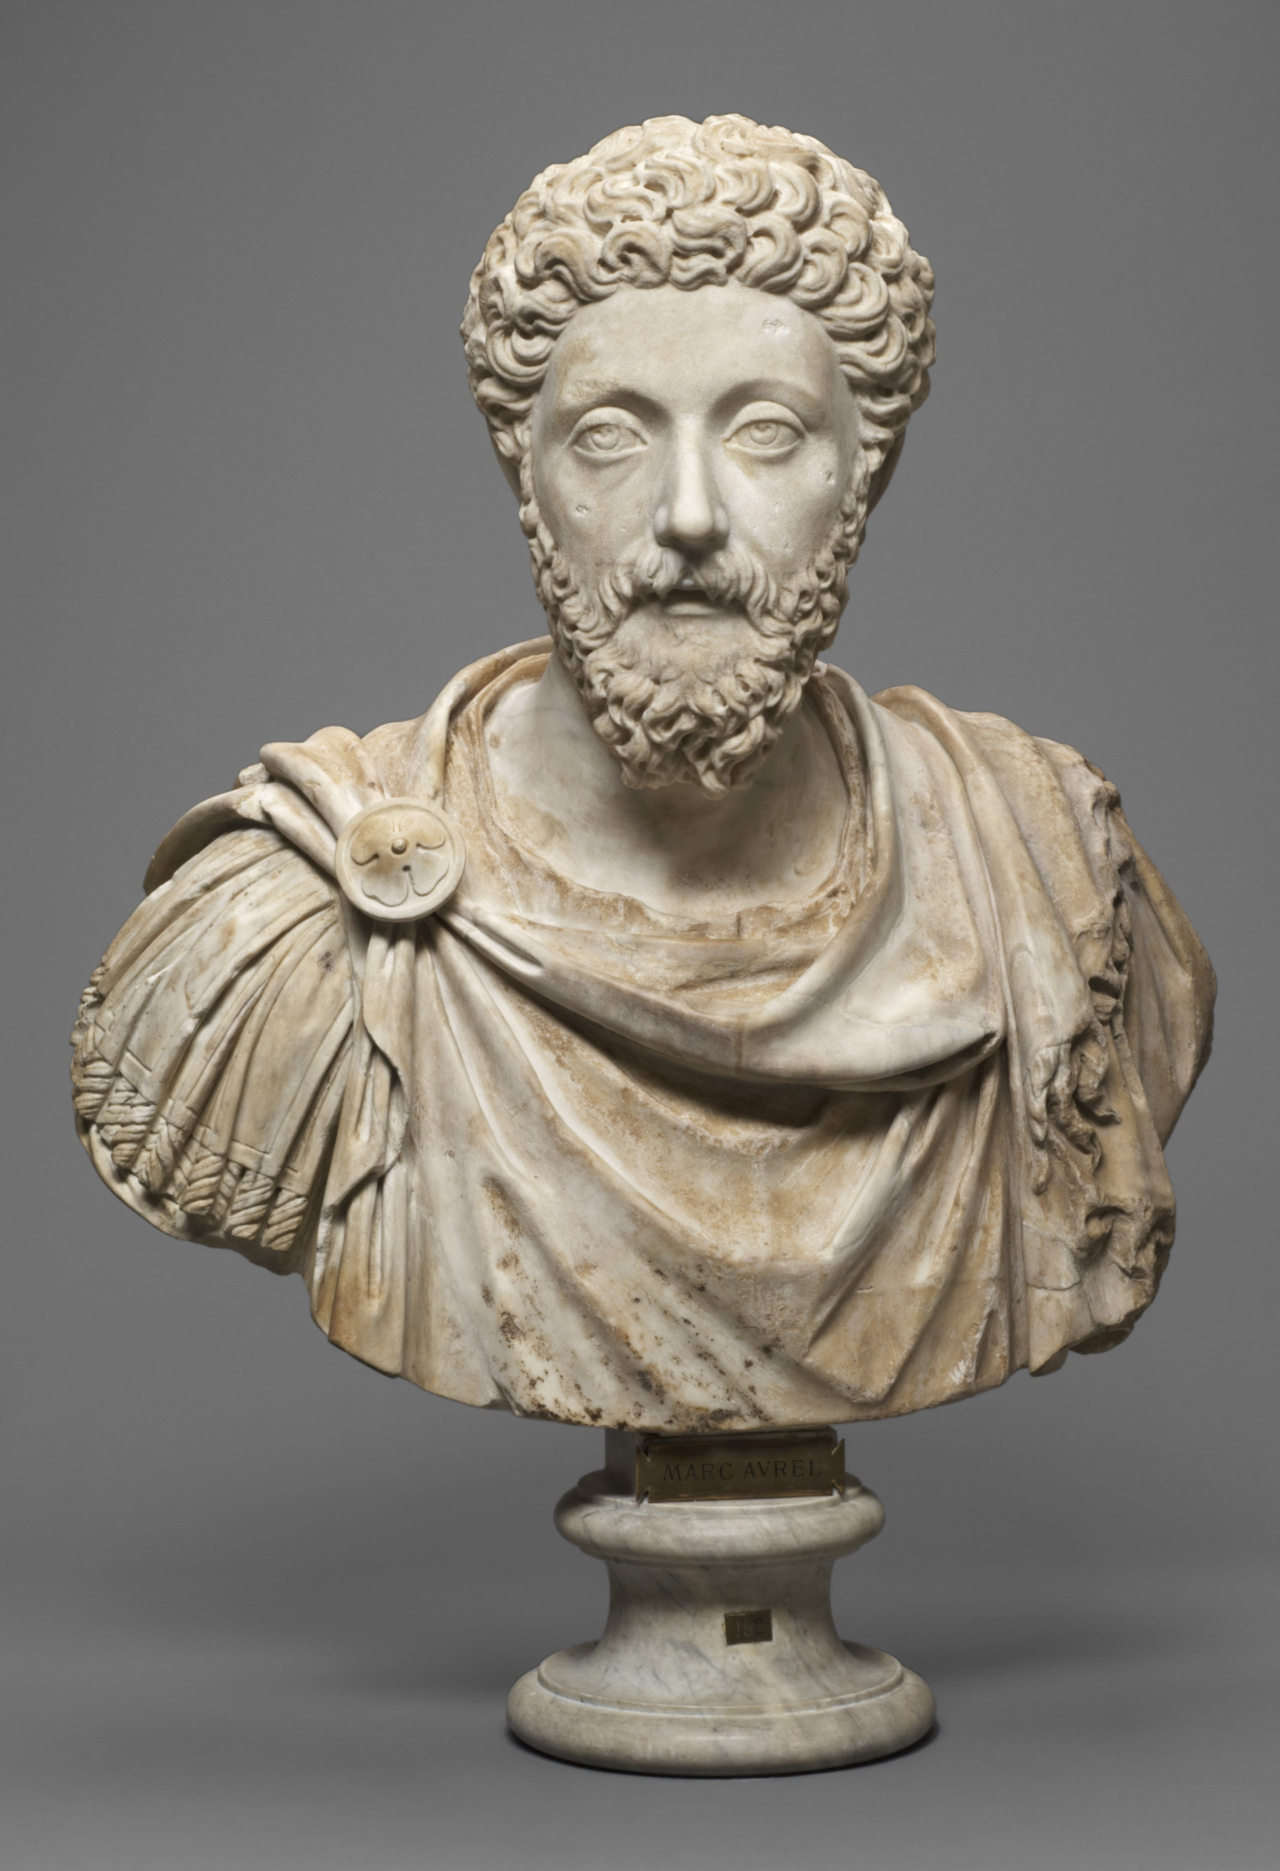 Portrait of Emperor Marcus Aurelius from the Roman era (NMK)